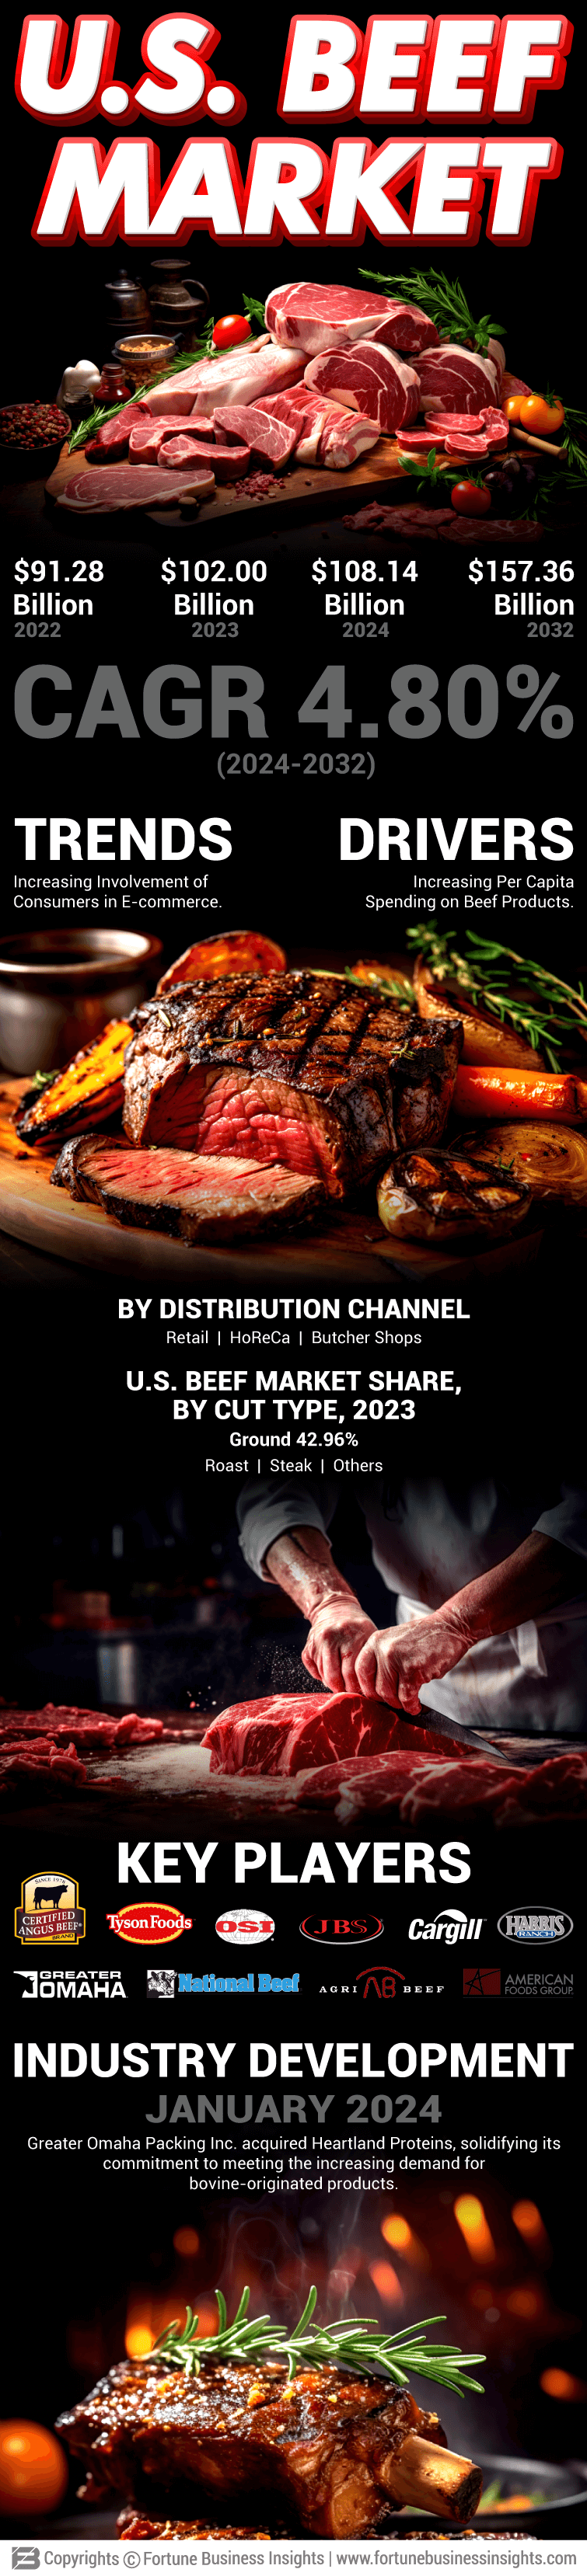 U.S. Beef Market